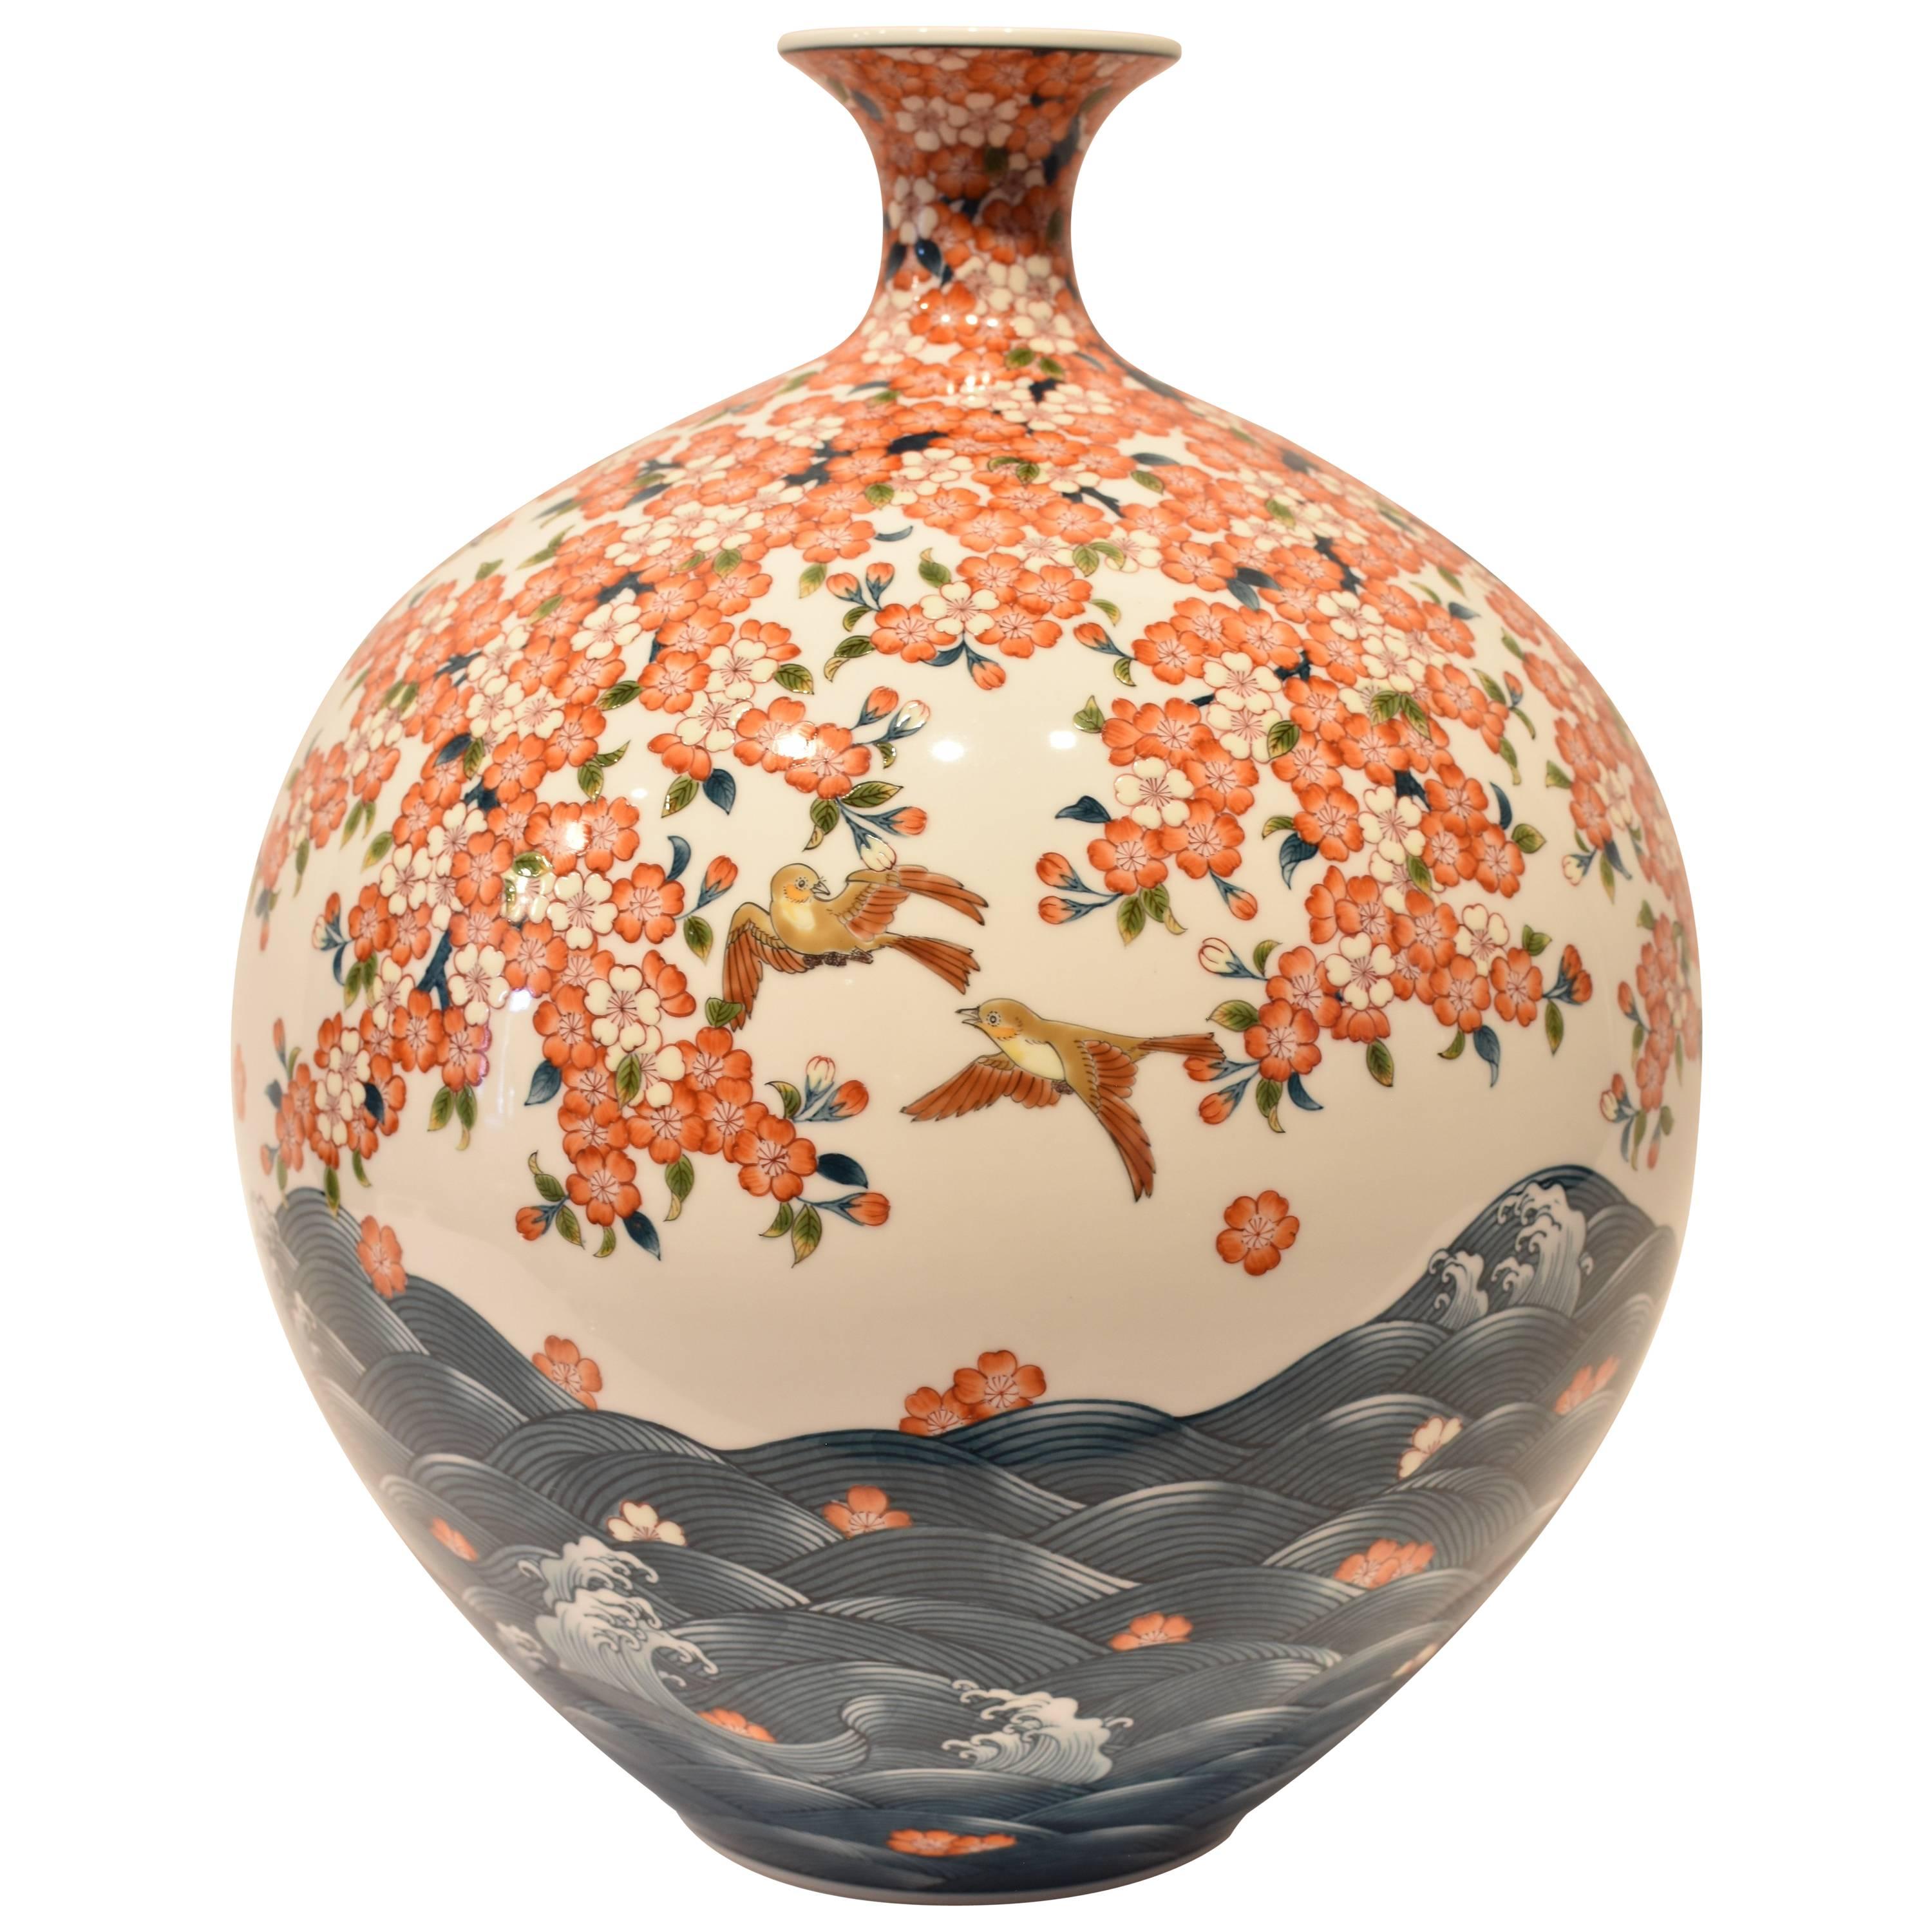 Porcelain Vase by Japanese Master Artist (Cherry Blossom Series)